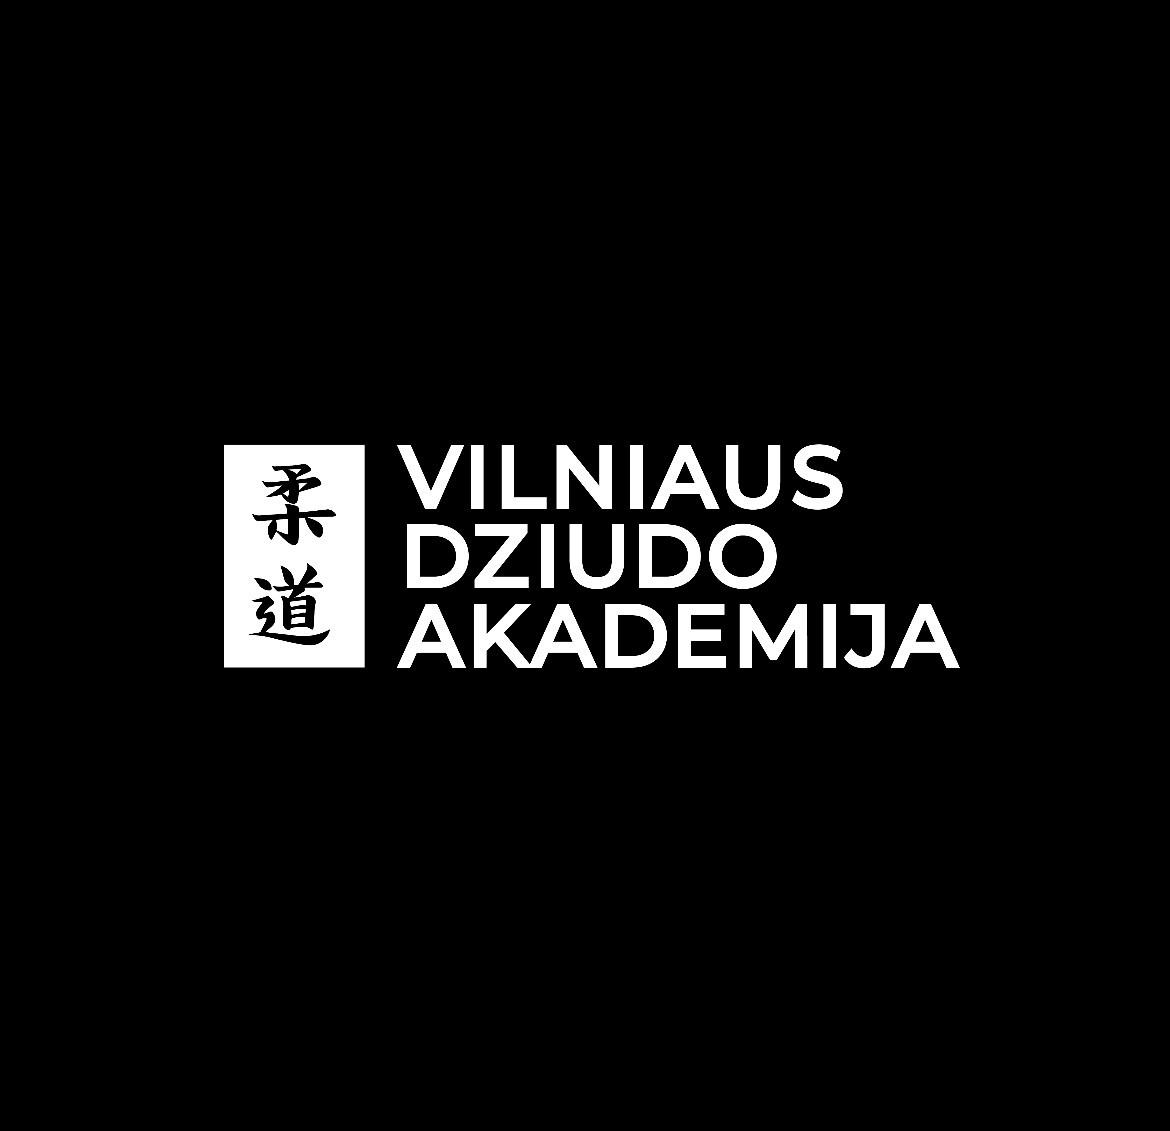 Vilniaus dziudo akademija